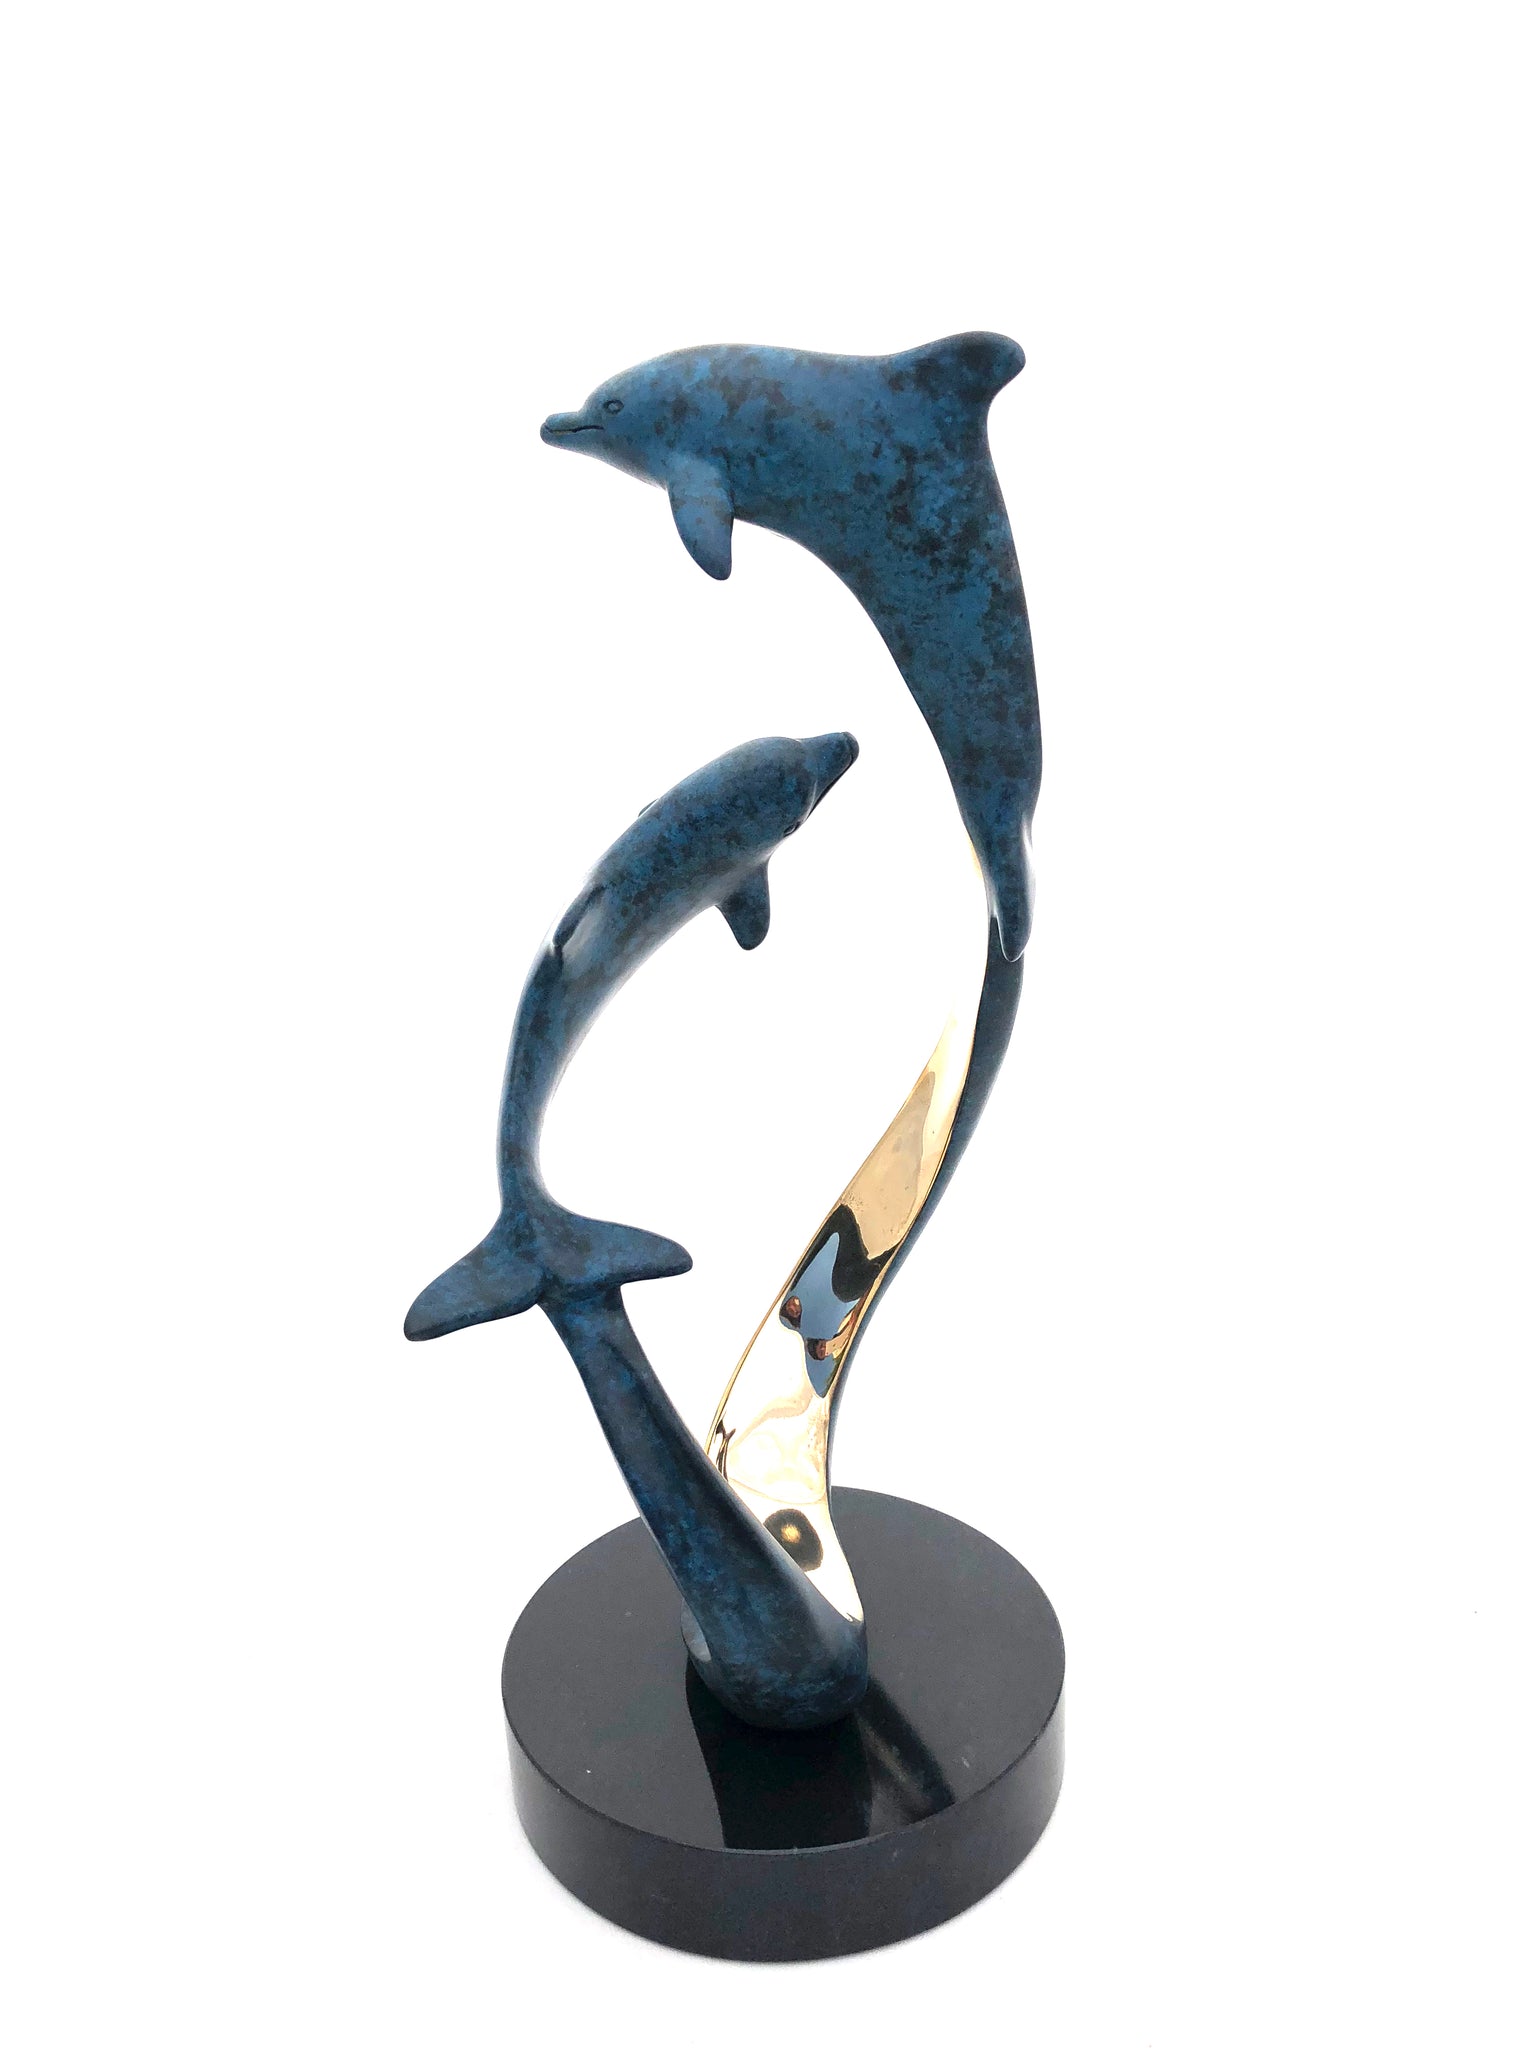 Bronze Dolphin Sculpture - Joyful Life Series  "Sentimental Journey" 12" tall